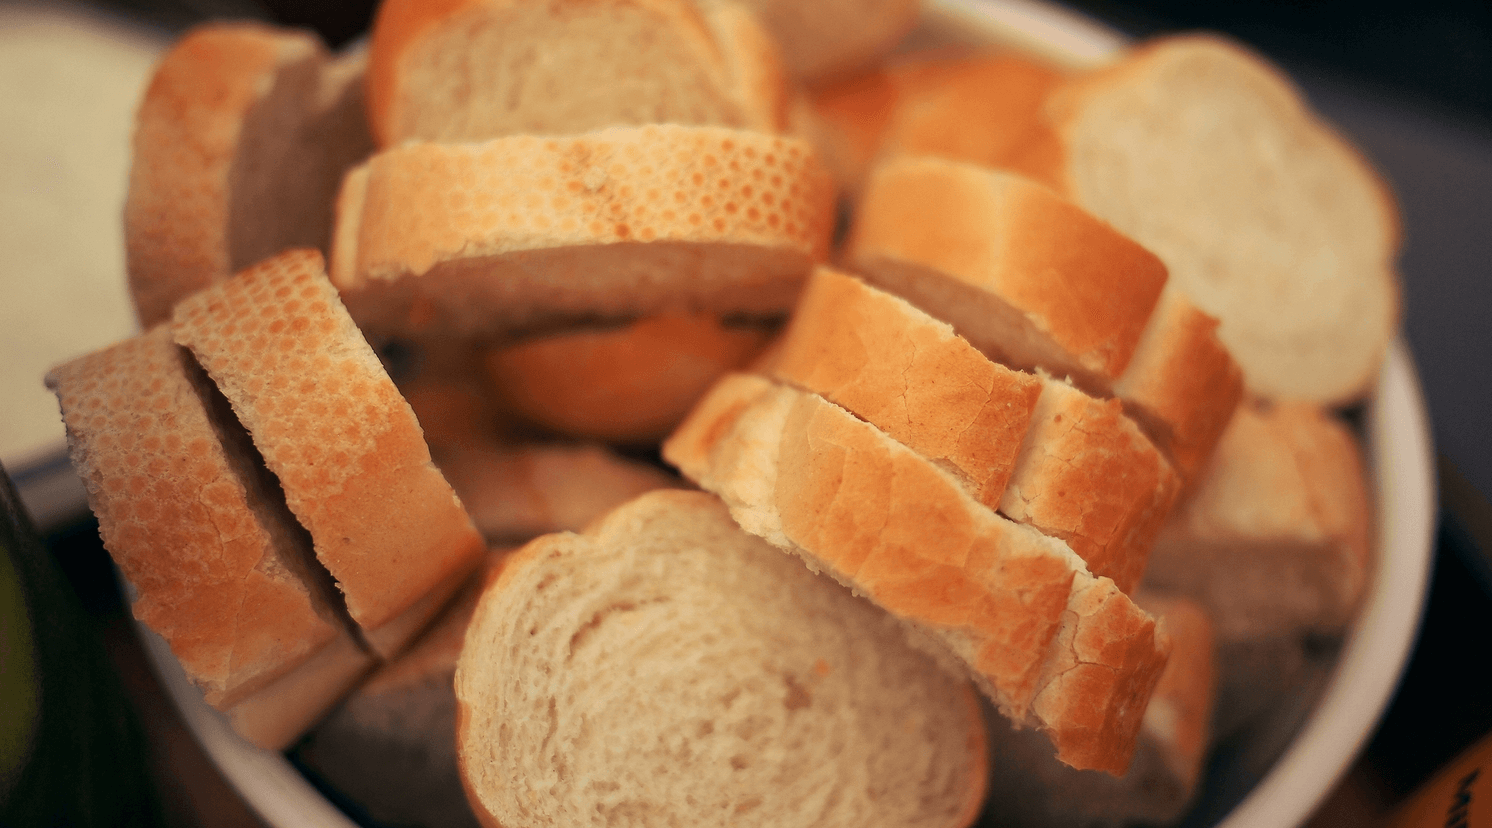 Qué es el gluten y cómo afecta a las personas